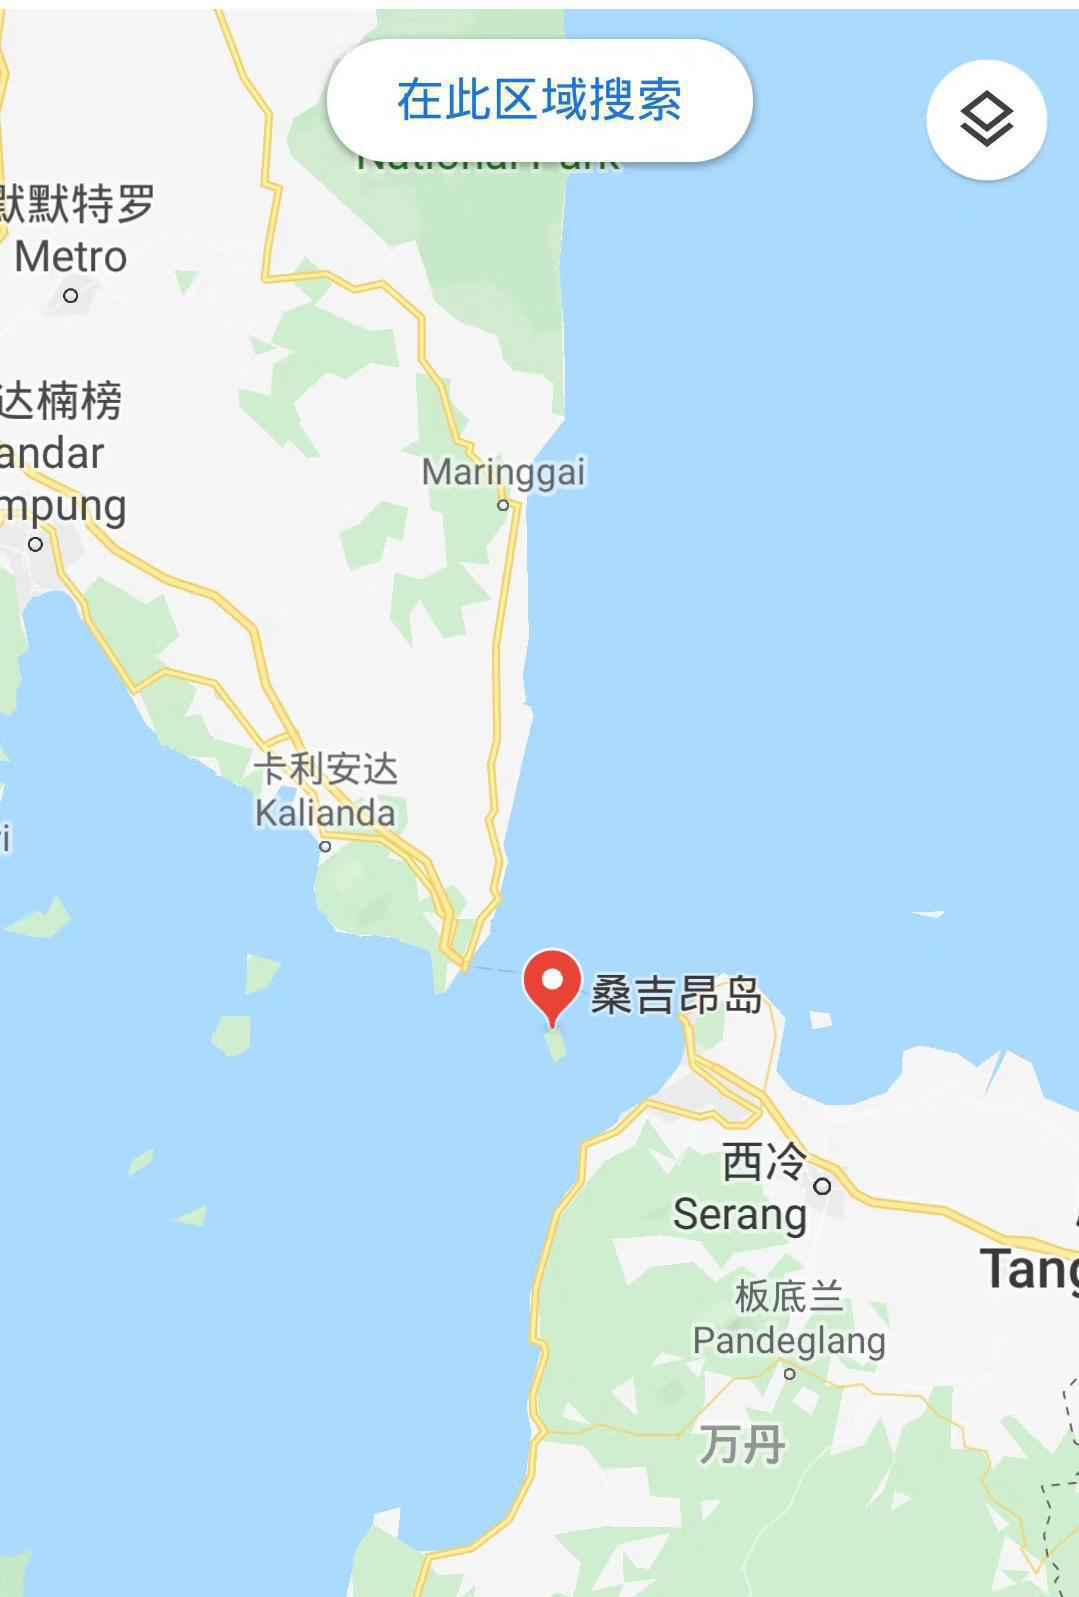 3名中国游客在印尼潜水失踪 搜救正在进行